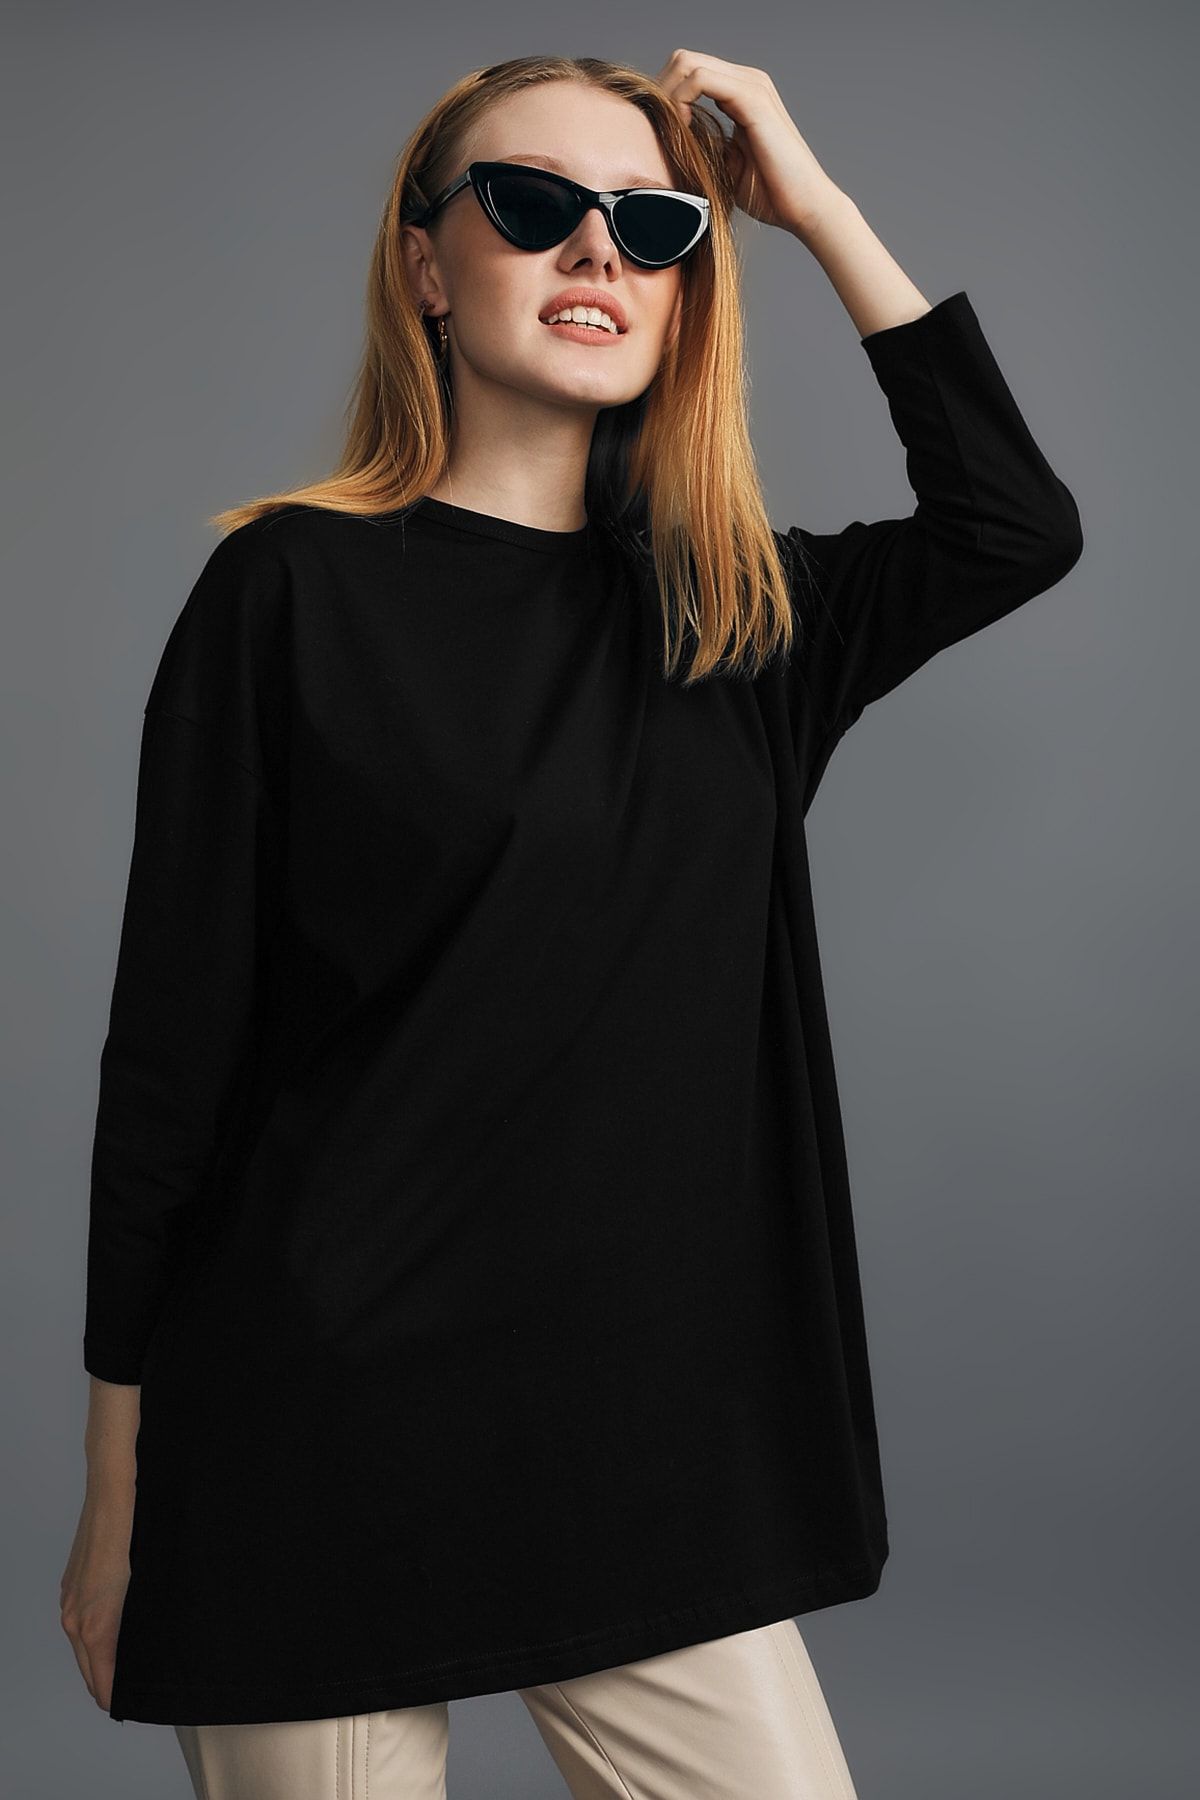 mirach Uzun Kollu Örme Tunik - Siyah Kadın Tesettür Tunik Modest Tunik Örme Elbise Uzun Kollu Elbise